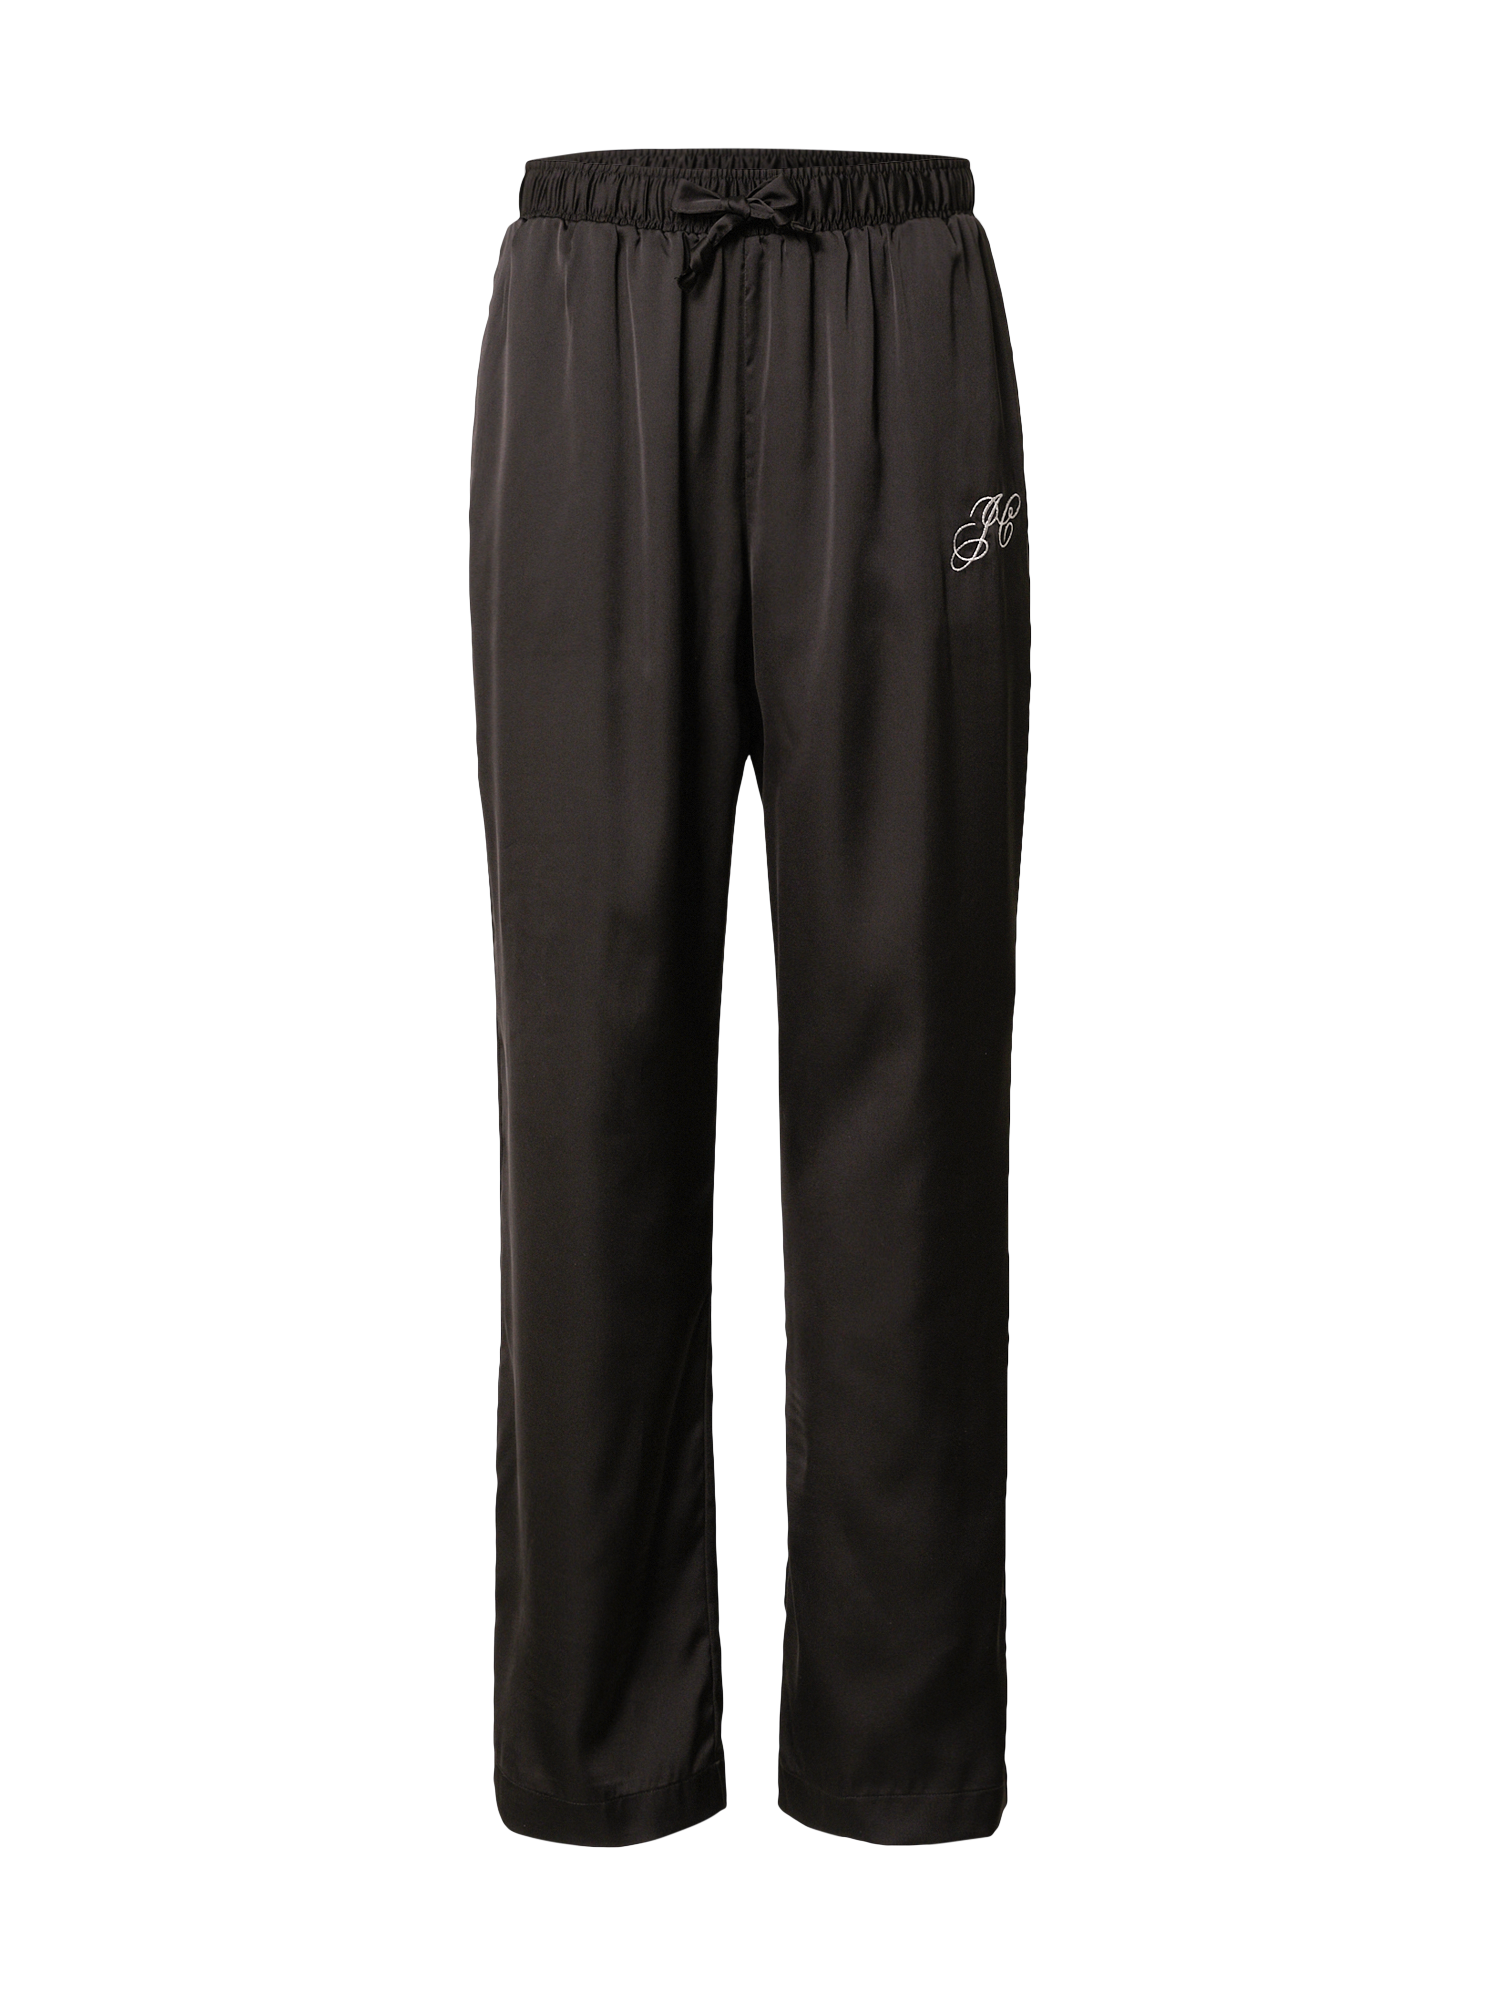 Frbqq Spodnie Juicy Couture Spodnie PAULA w kolorze Czarnym 